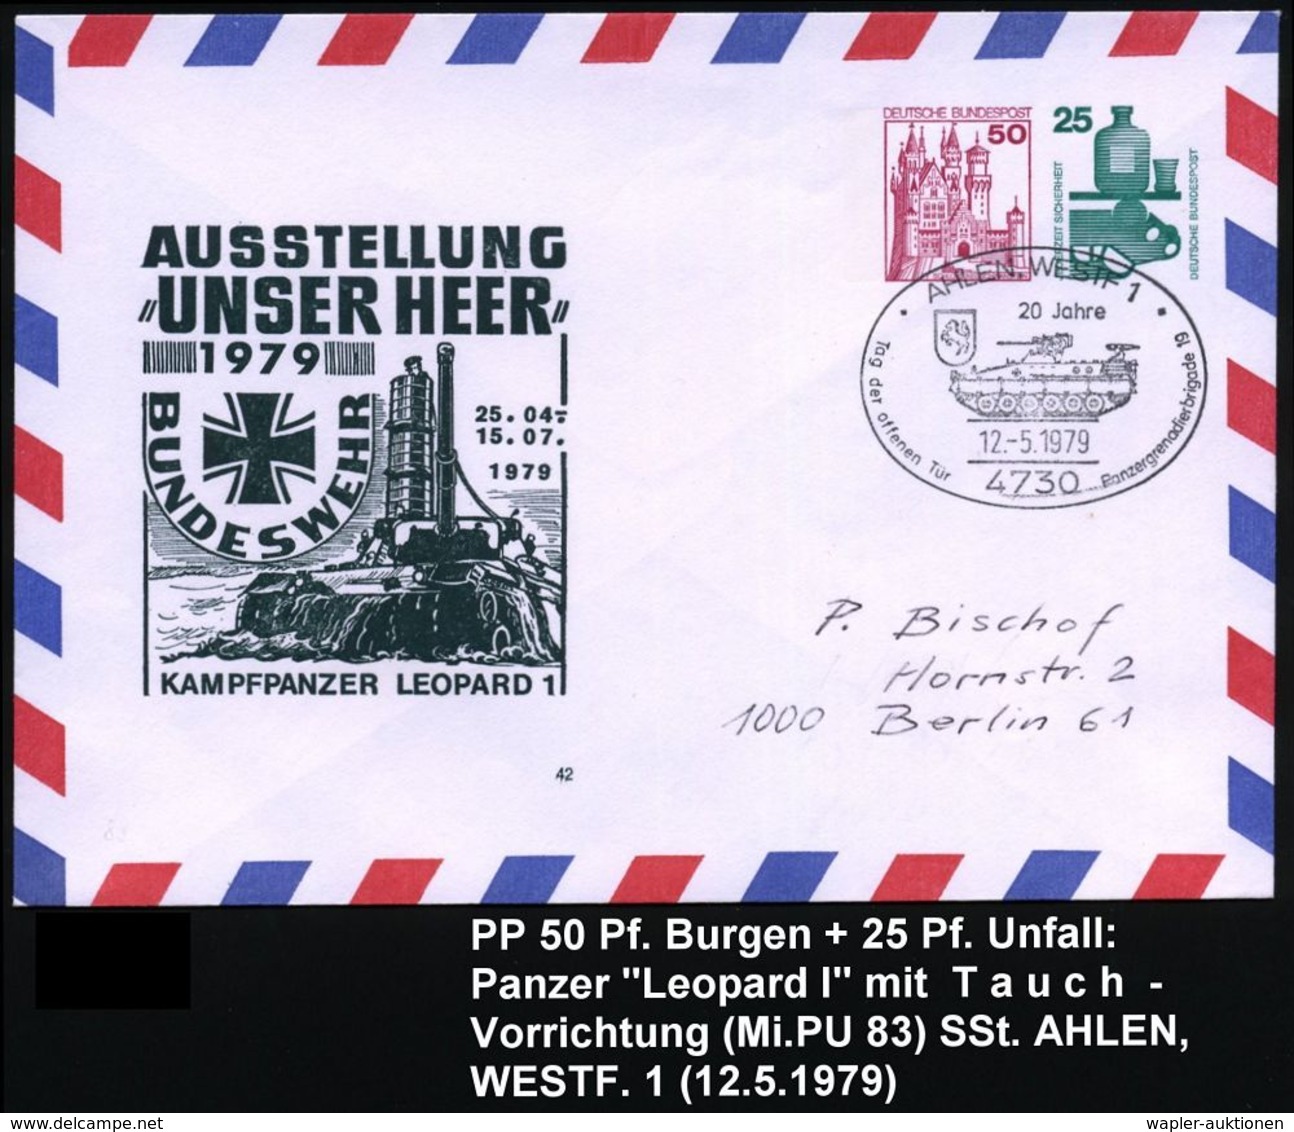 GEPANZERTE KRAFTFAHRZEUGE / PANZER : 4730 AALEN,WESTF 1/ 20 Jahre/ ..Panzergrenadierbrigade 19 1979 (12.5.) SSt = Sch.-P - Altri (Terra)